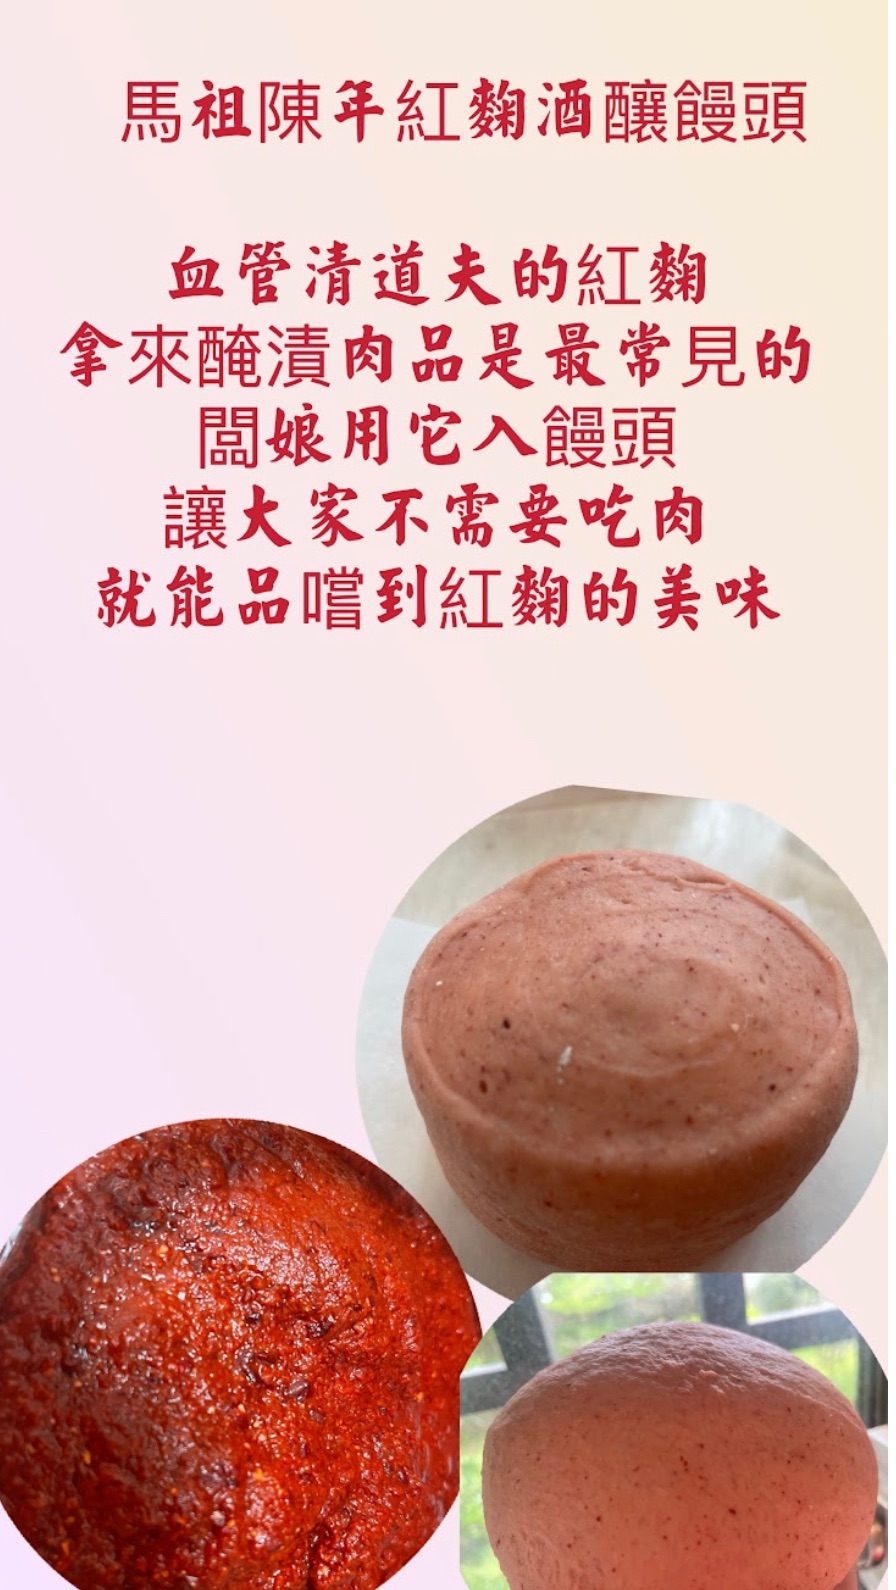 馬祖陳年紅麴酒釀饅頭